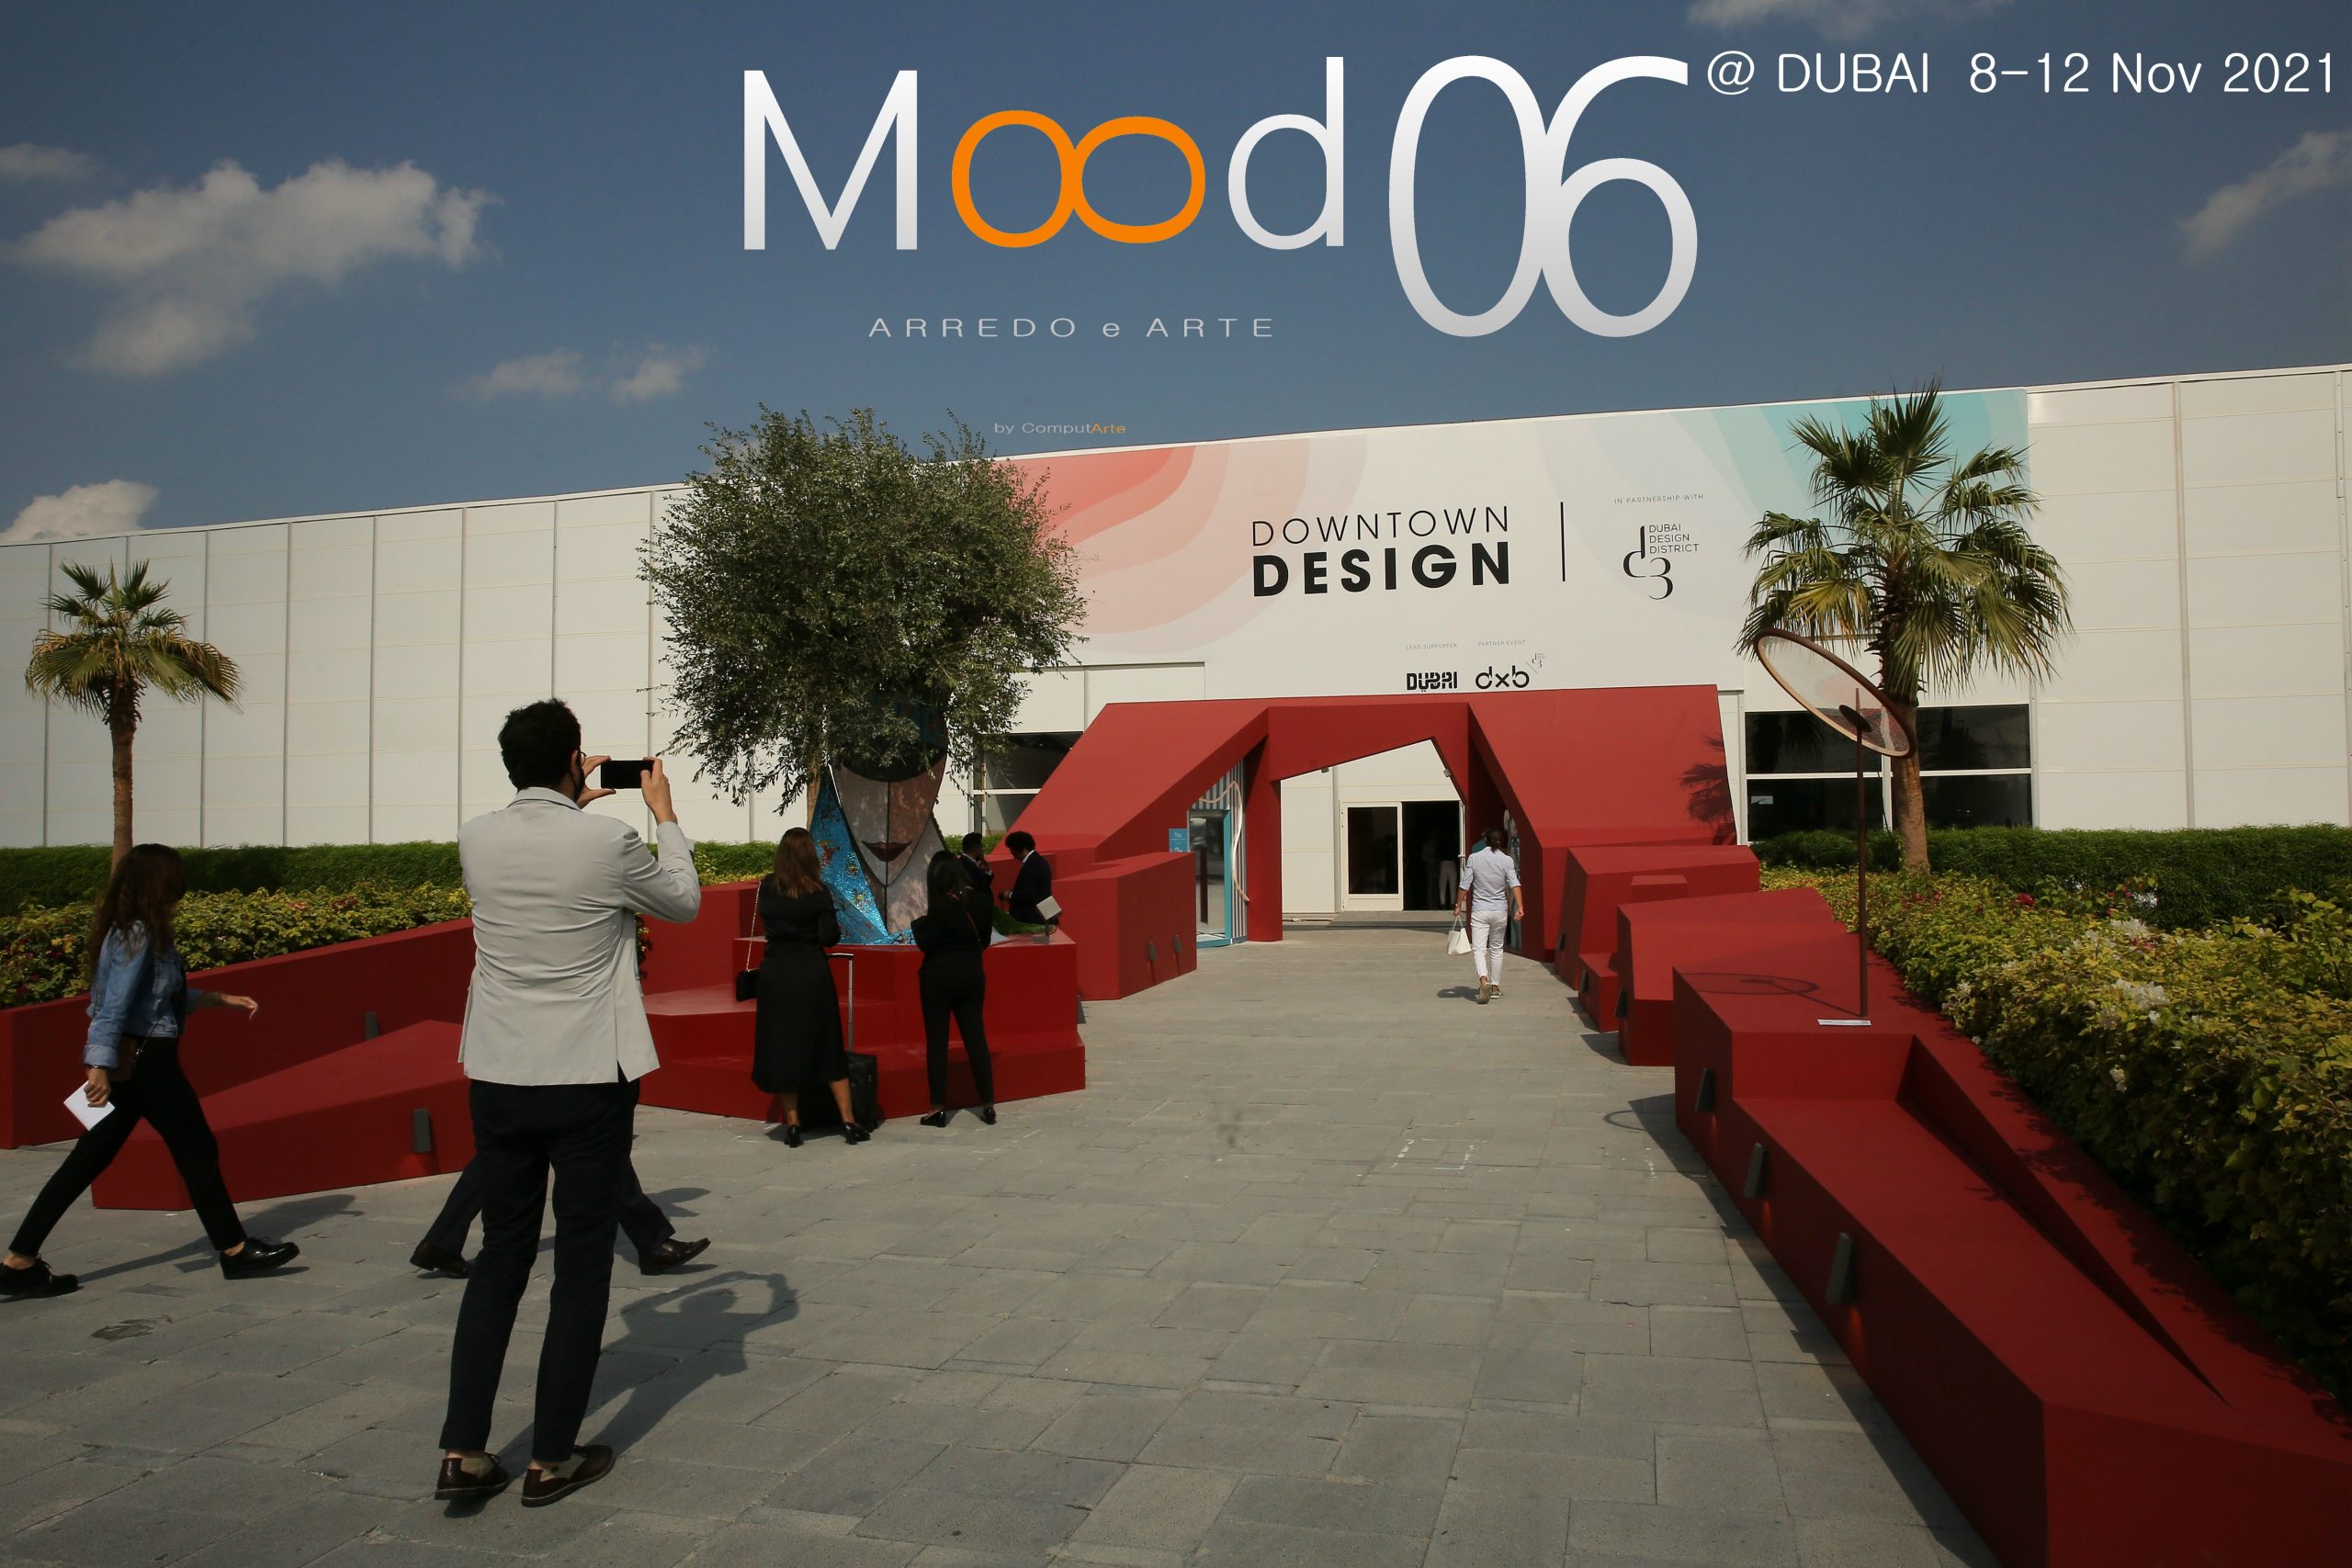 Mood06 Arredo e Arte by ComputArte @ DUBAI Downtown DESIGN 8-12 Nov 2021